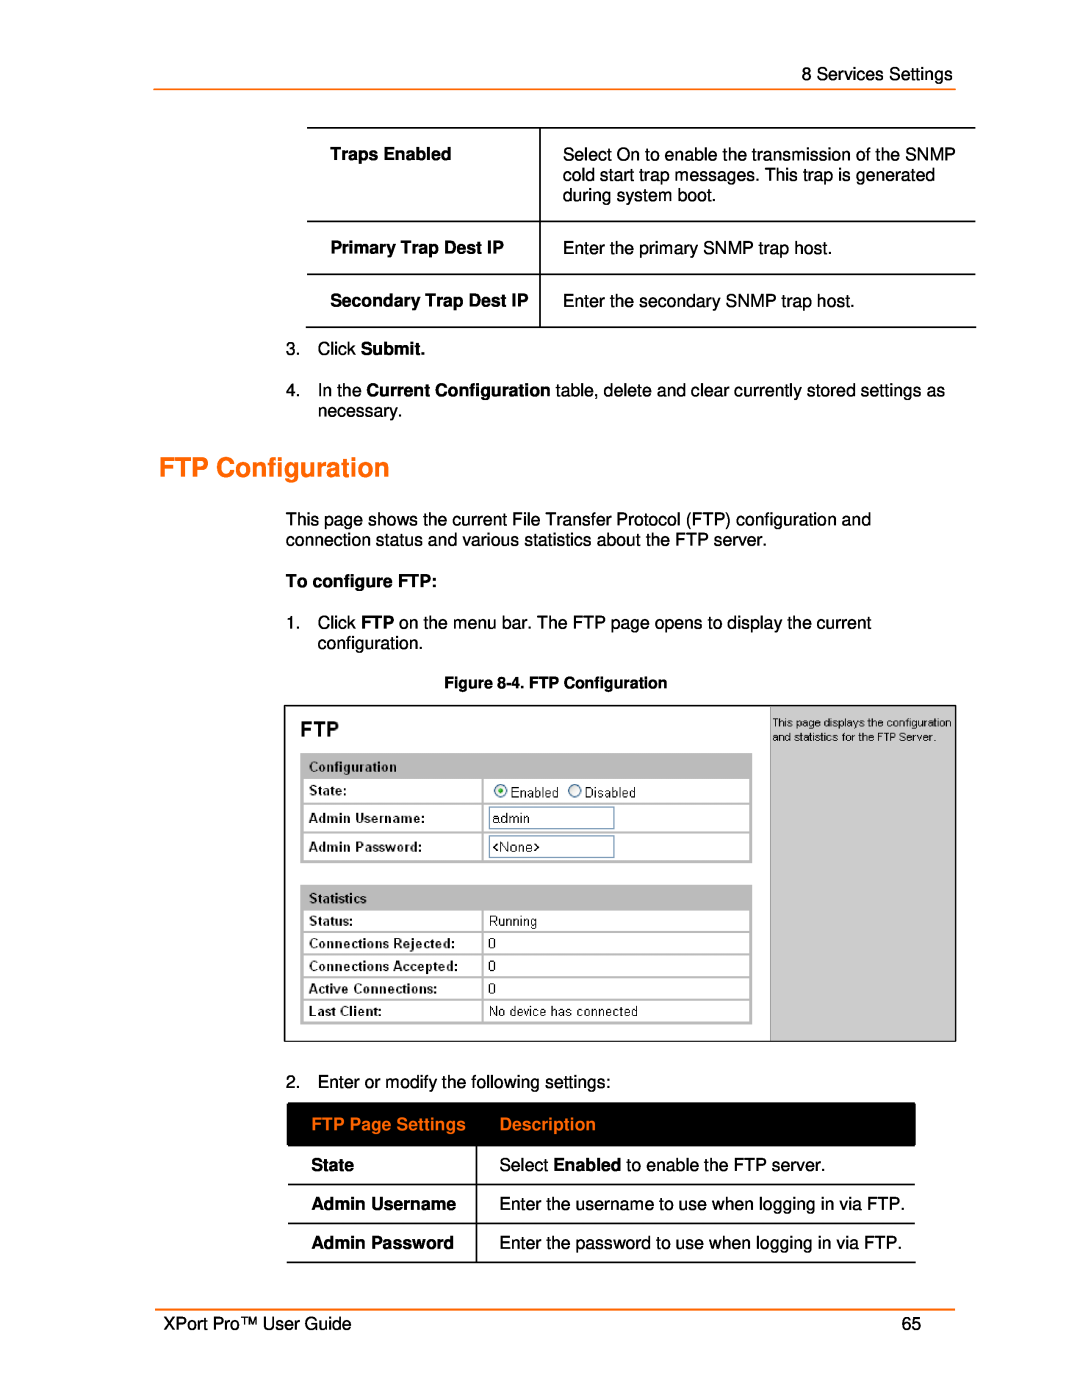 Lantronix 900-560 manual FTP Page Settings, Description, 4. FTP Configuration 